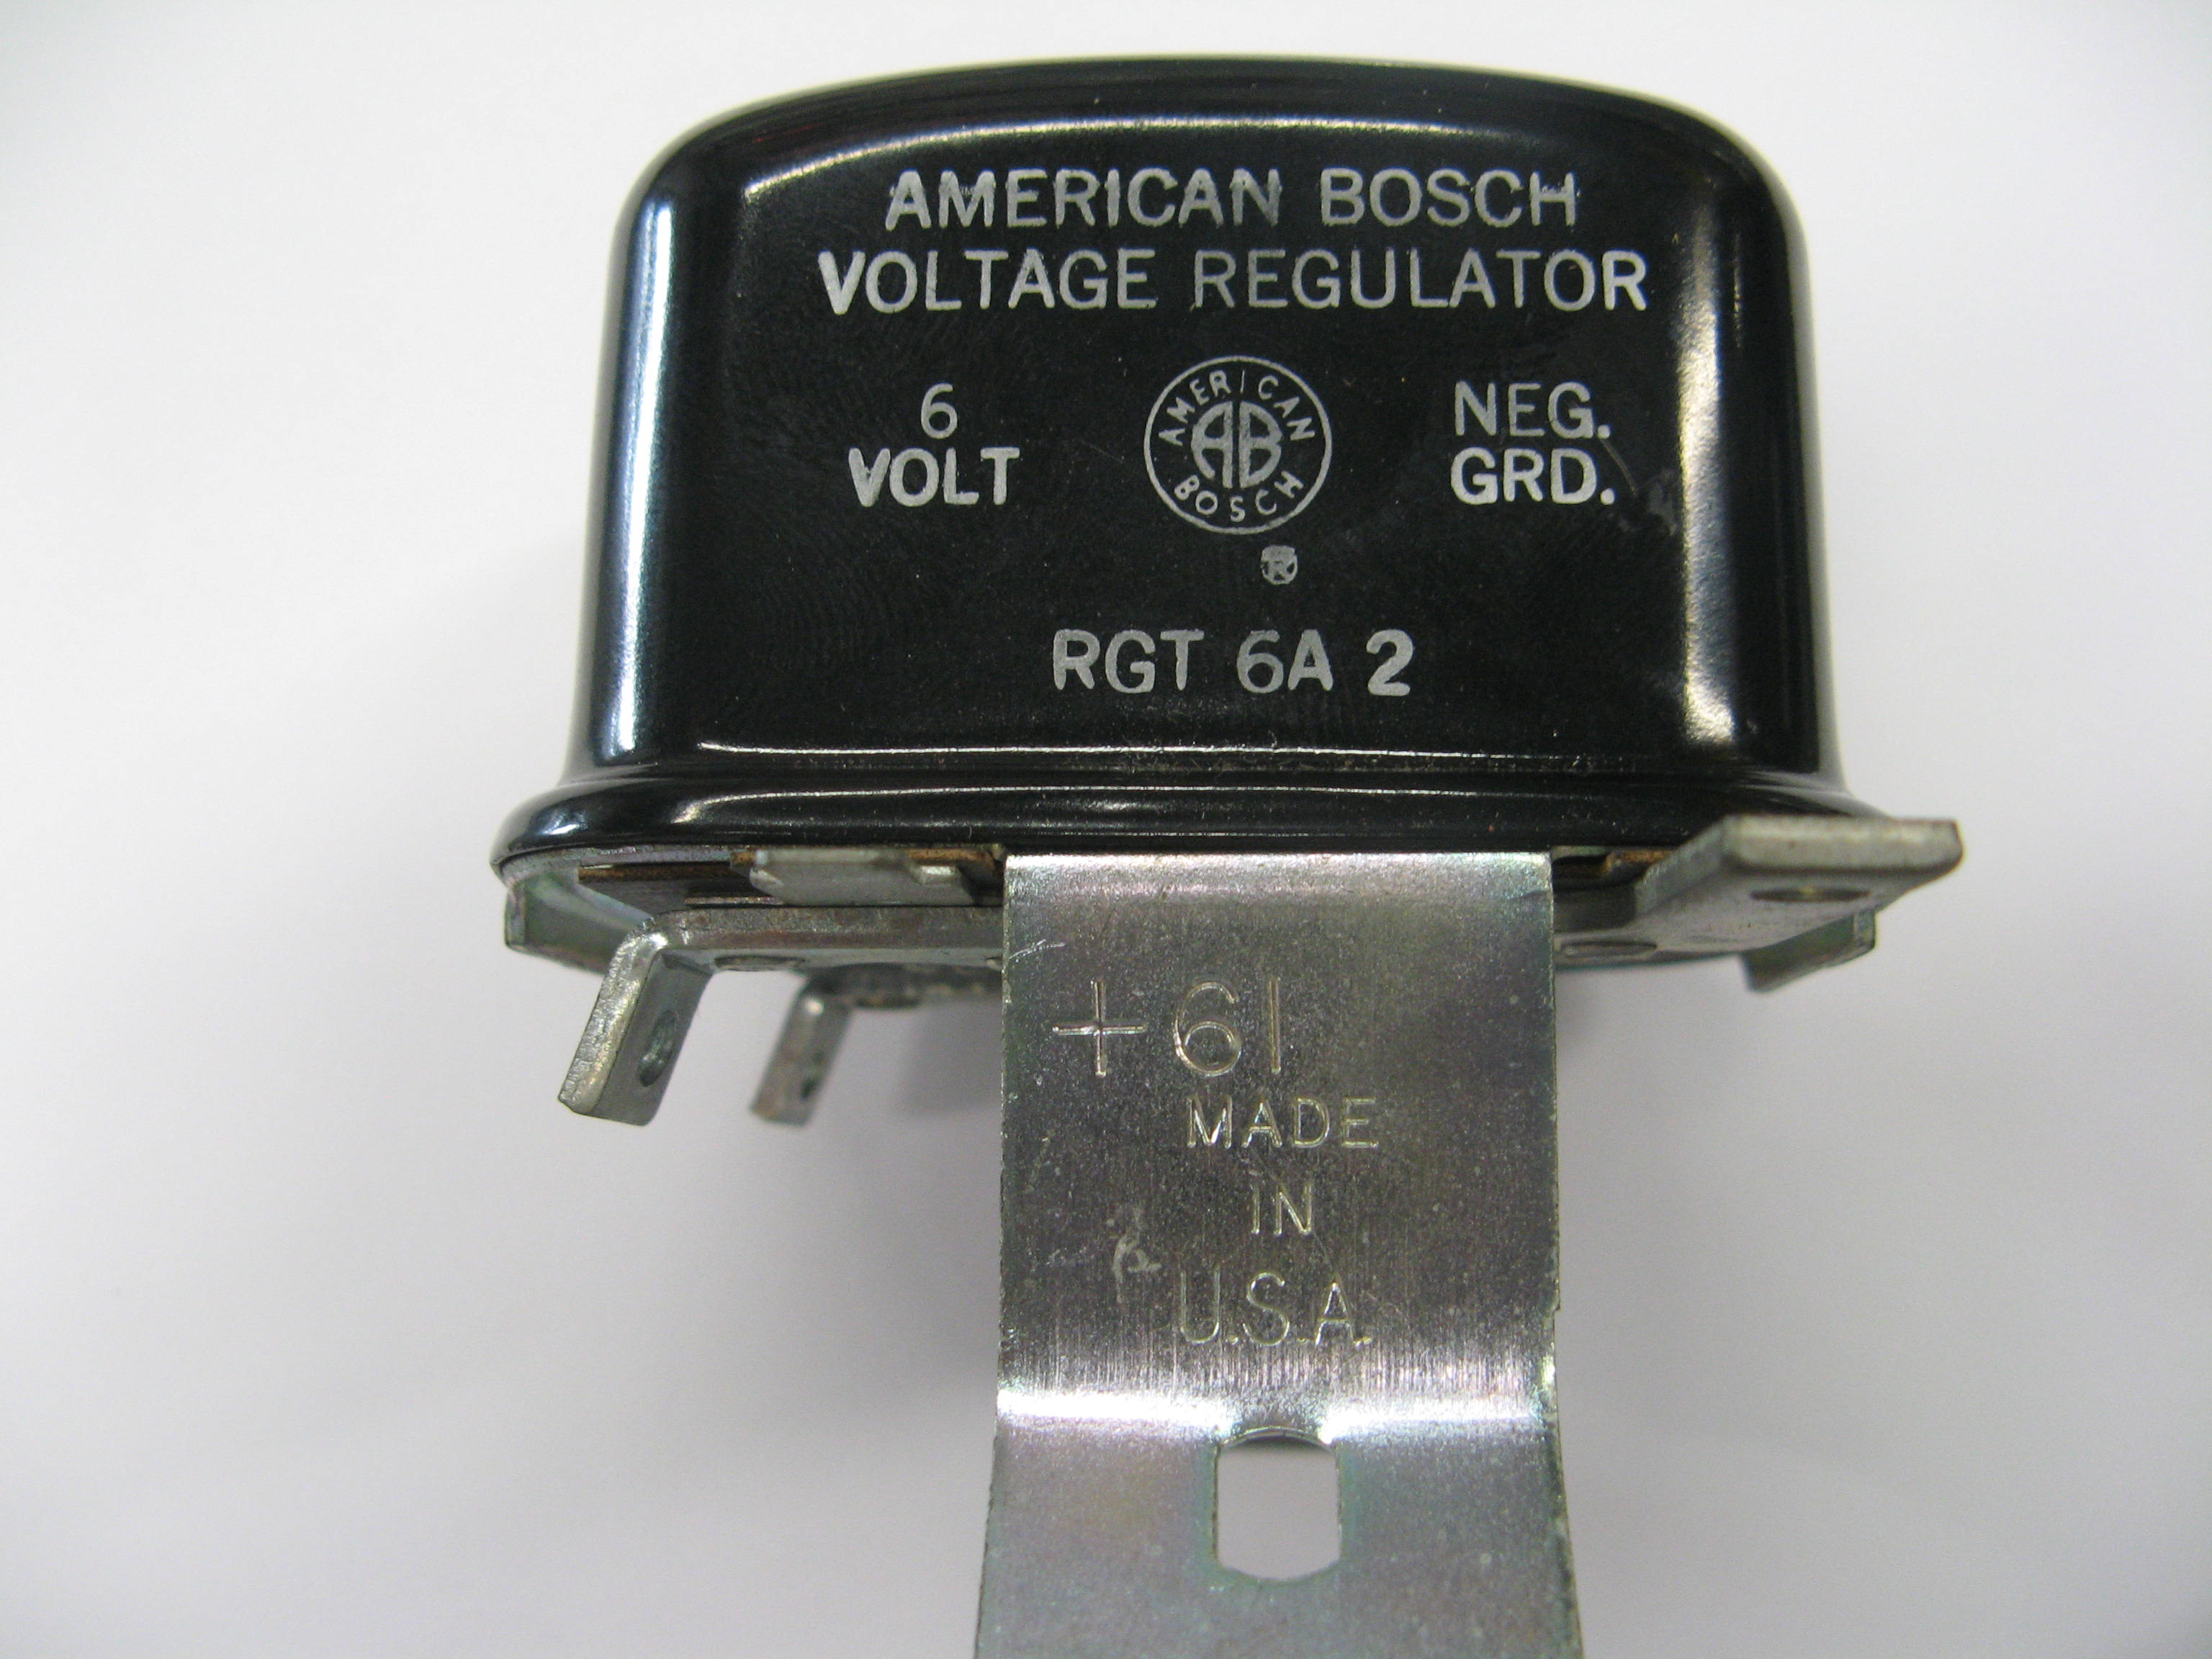 Bosch 6 volt Regulator - Bos190213015